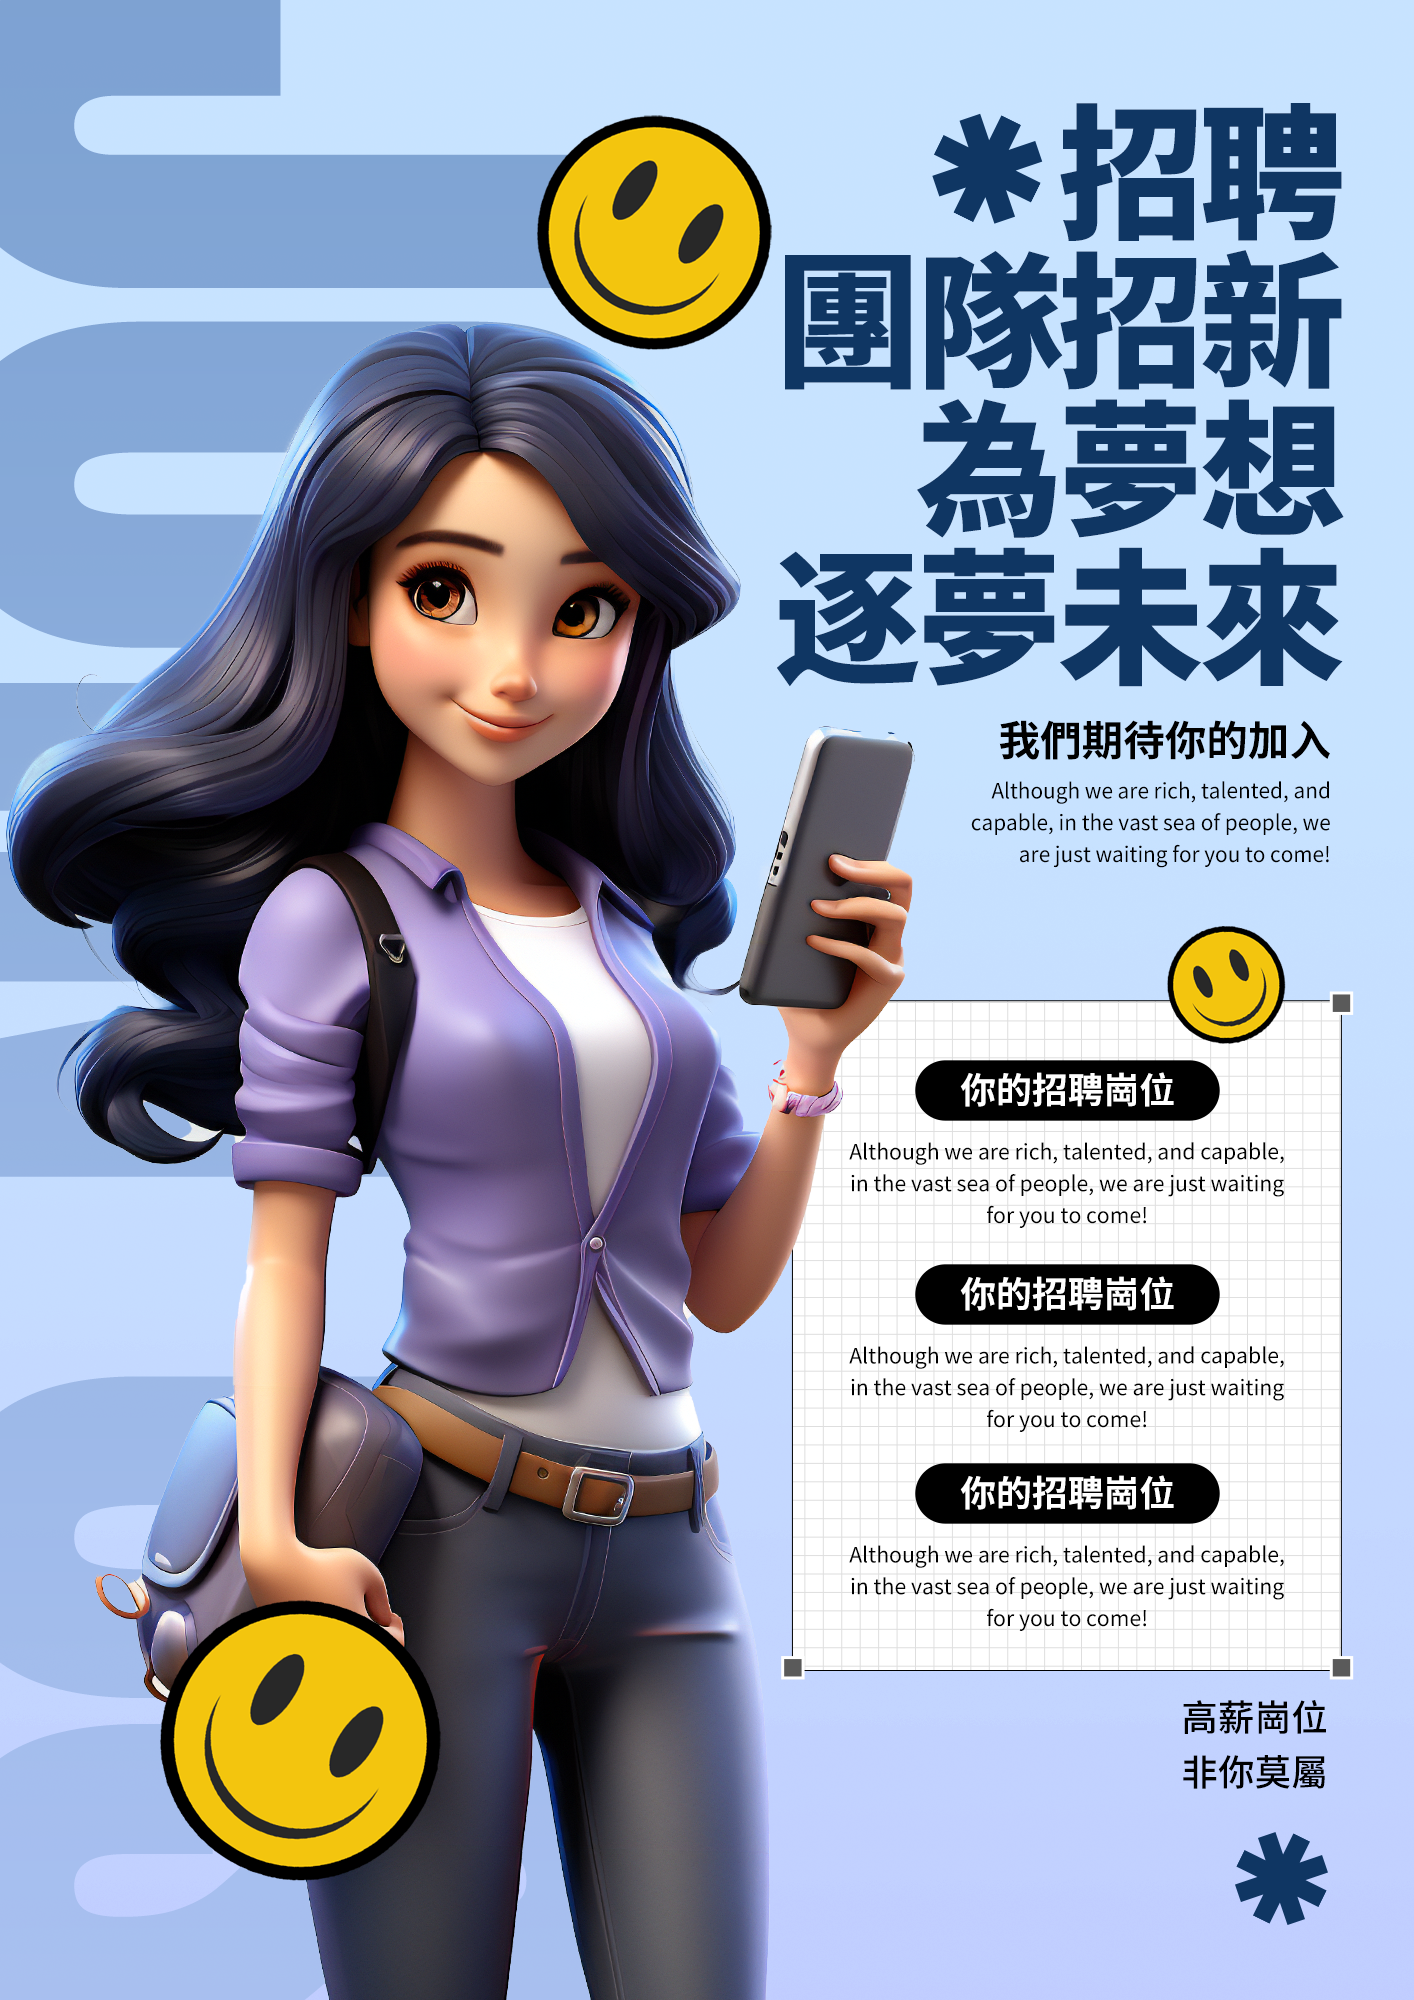 立体卡通3d女孩笑脸表情公司招募团队经营宣传海报图片